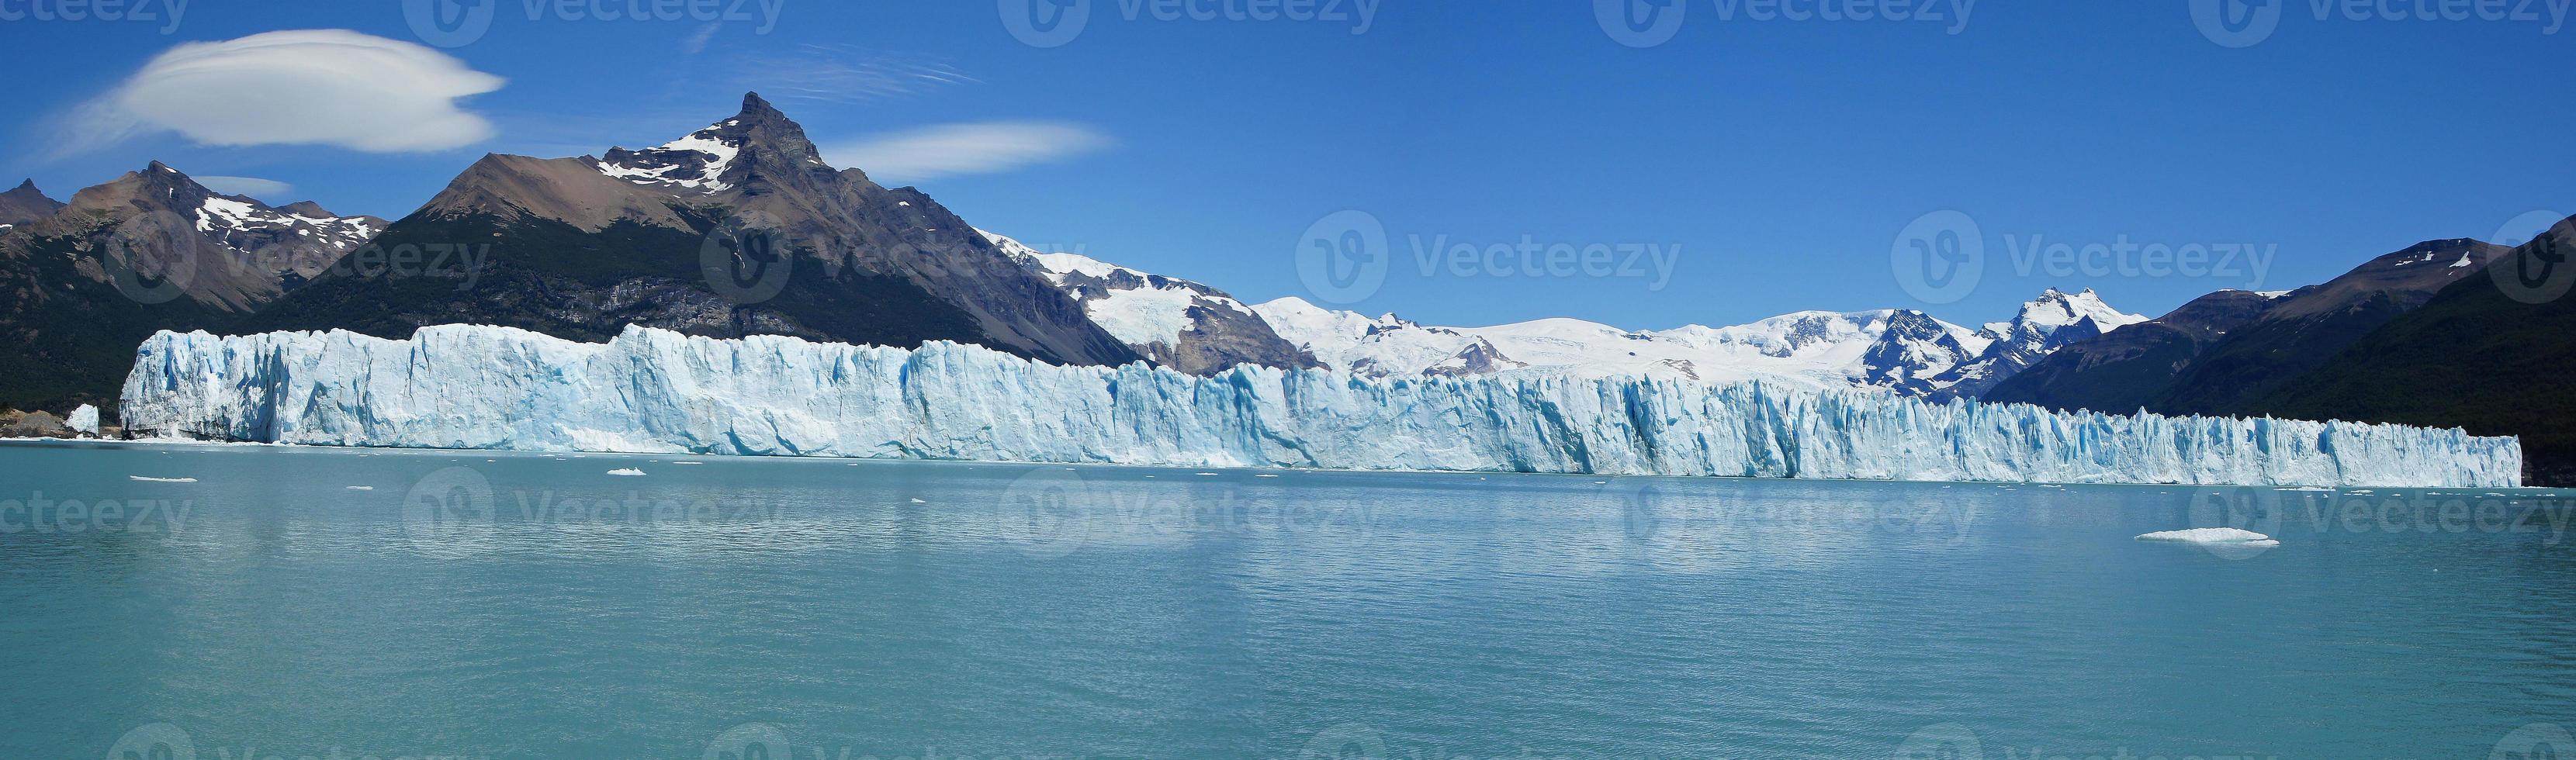 glaciar perito moreno, argentina foto